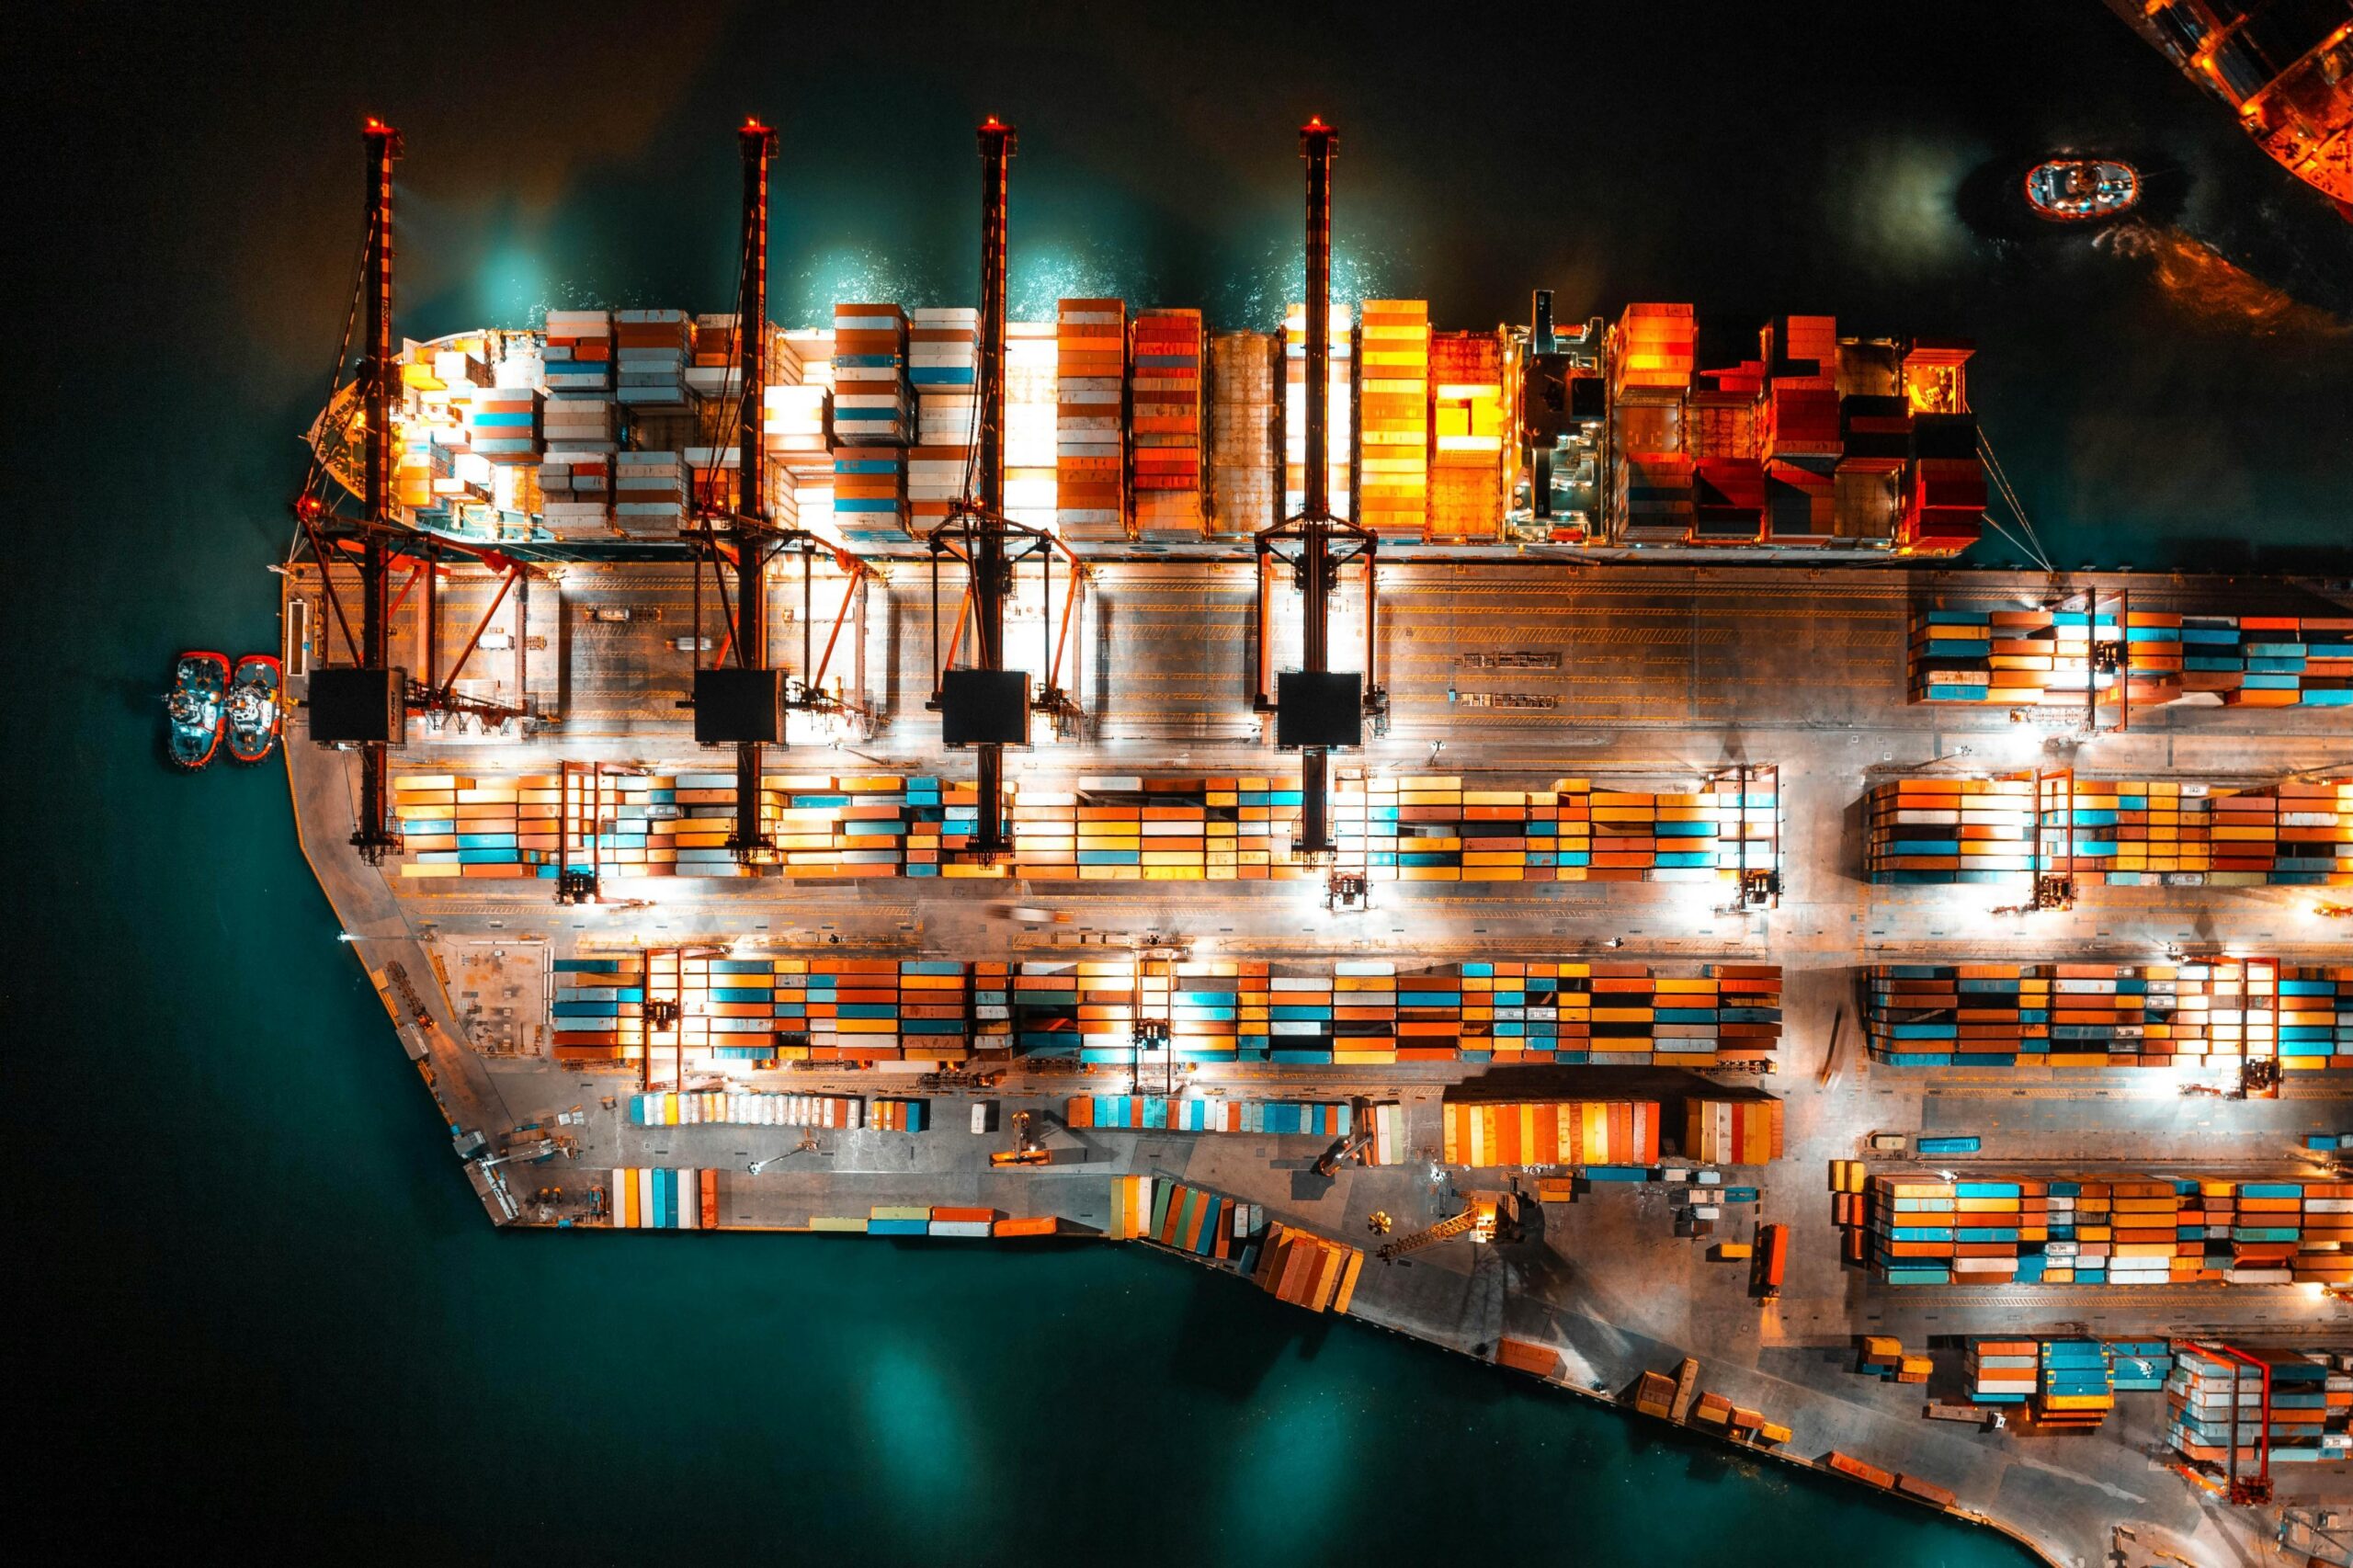 Widok morskiego portu towarowego w nocy. Oświetlone żurawie pracują nad kolorowymi kontenerami.